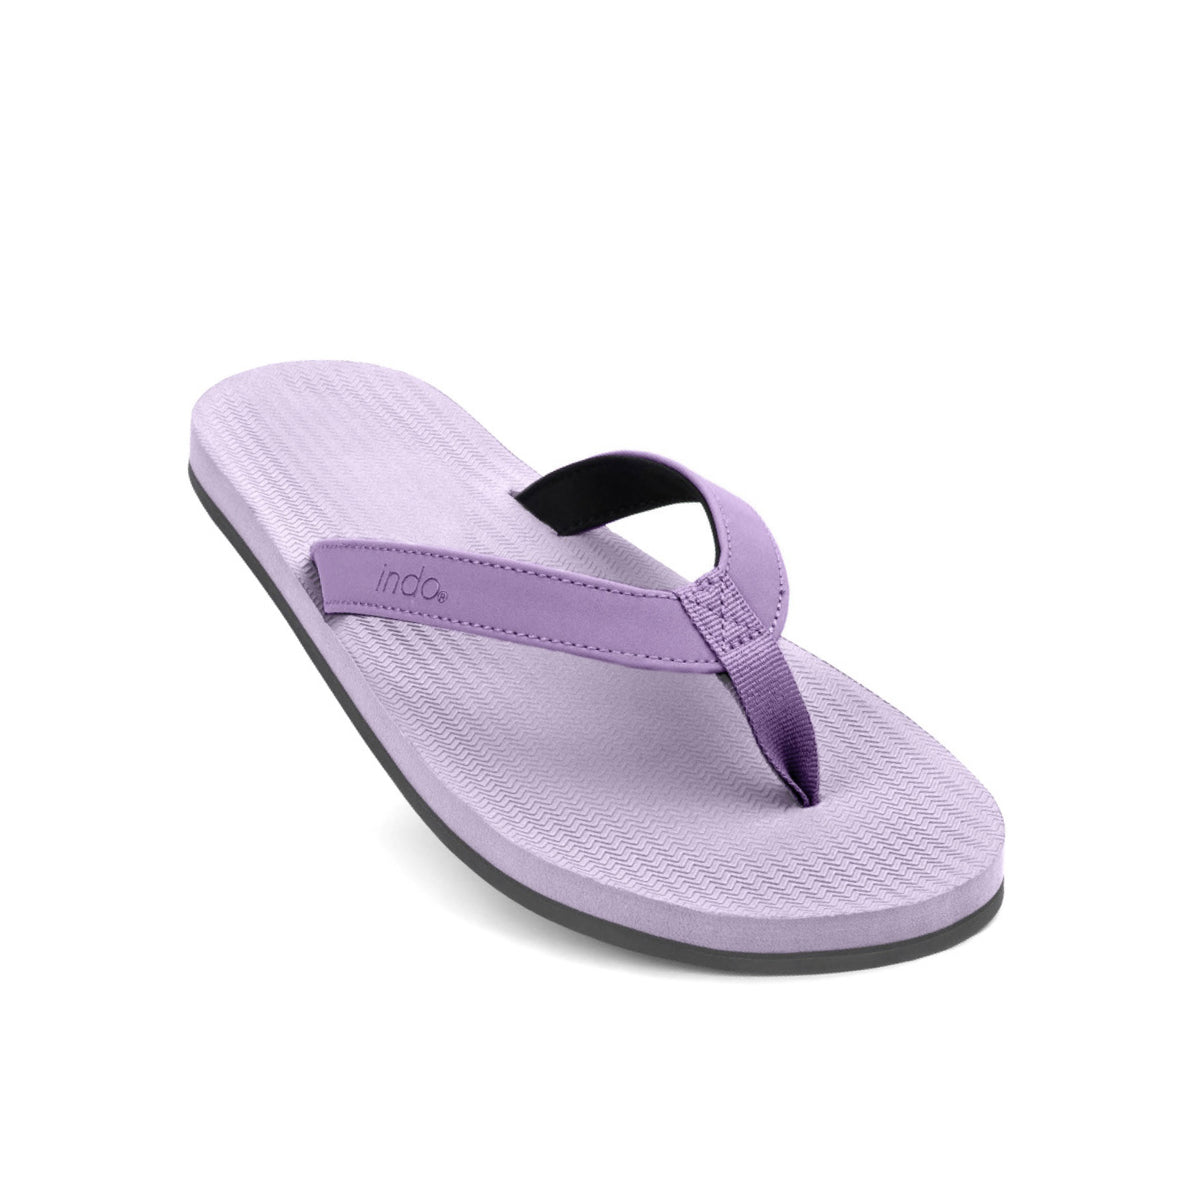 Men's Flip Flops - Purple/Haze